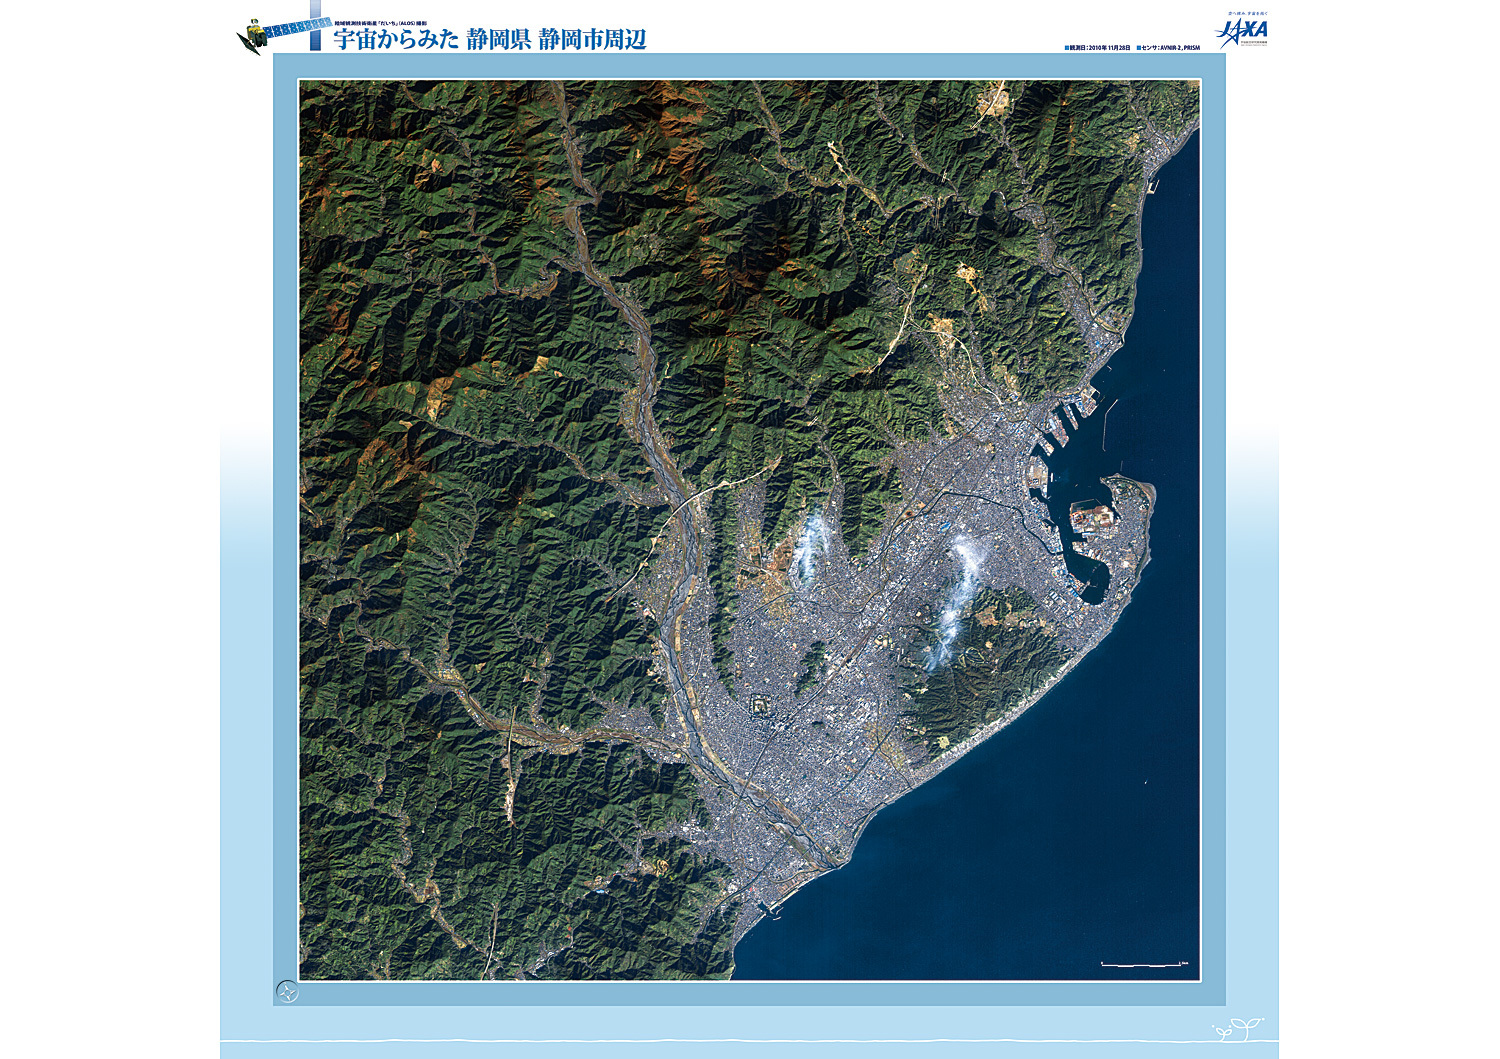 だいちから見た日本の都市 静岡市:衛星画像（ポスター仕上げ）